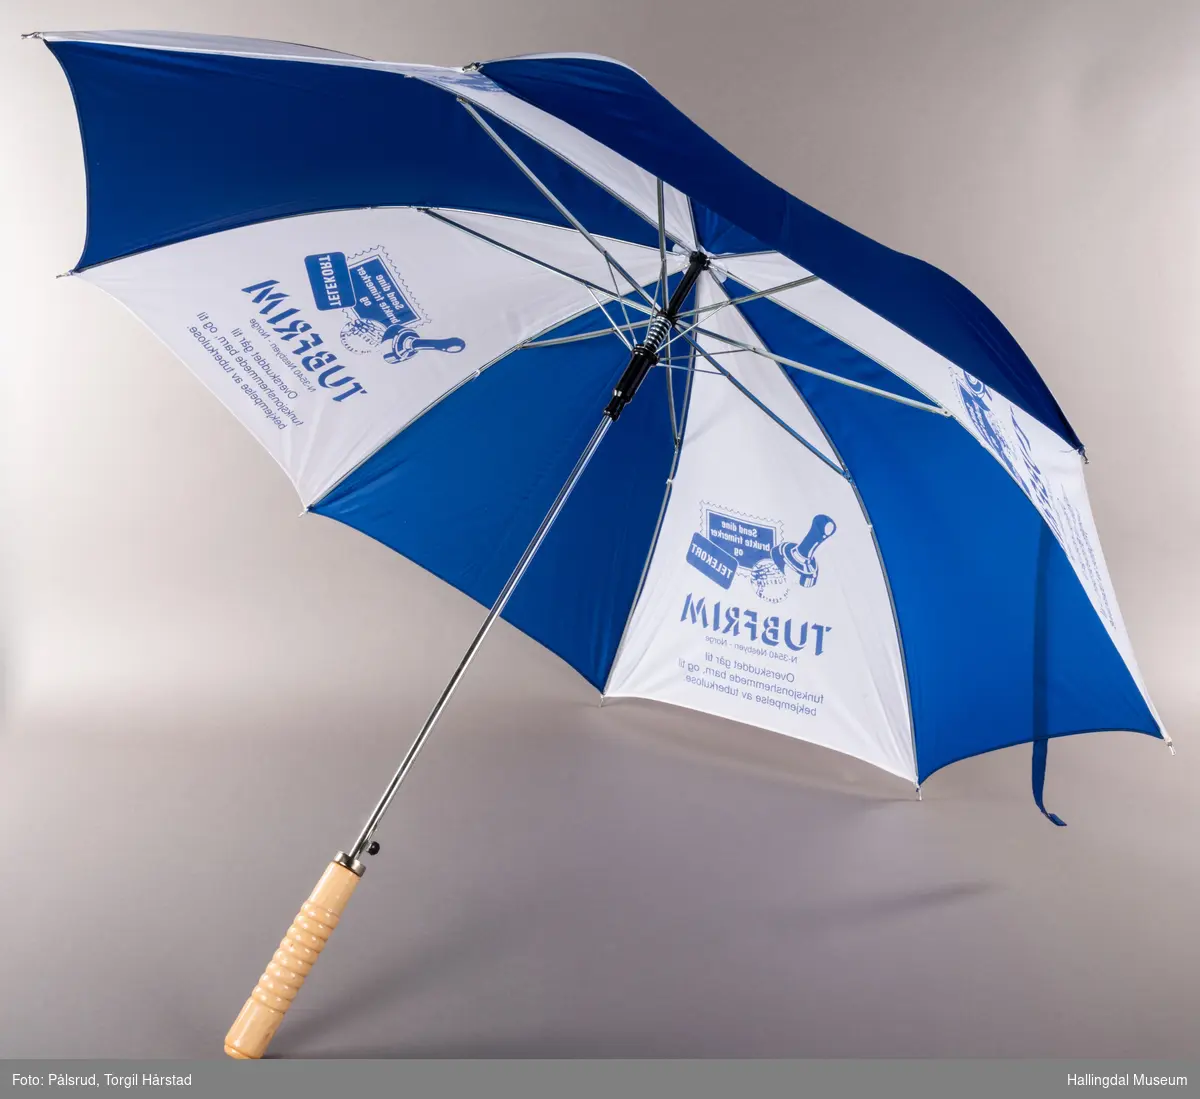 En blå og hvit paraply, annenhver farge på hver stoffdel. De hvite delene har påtrykk med TUBFRIM-logo og tekst. LAng, blank metalltapp i tuppen. Stangen er blank metall med sorte plastikkdeler. Håndtaket er av tre.